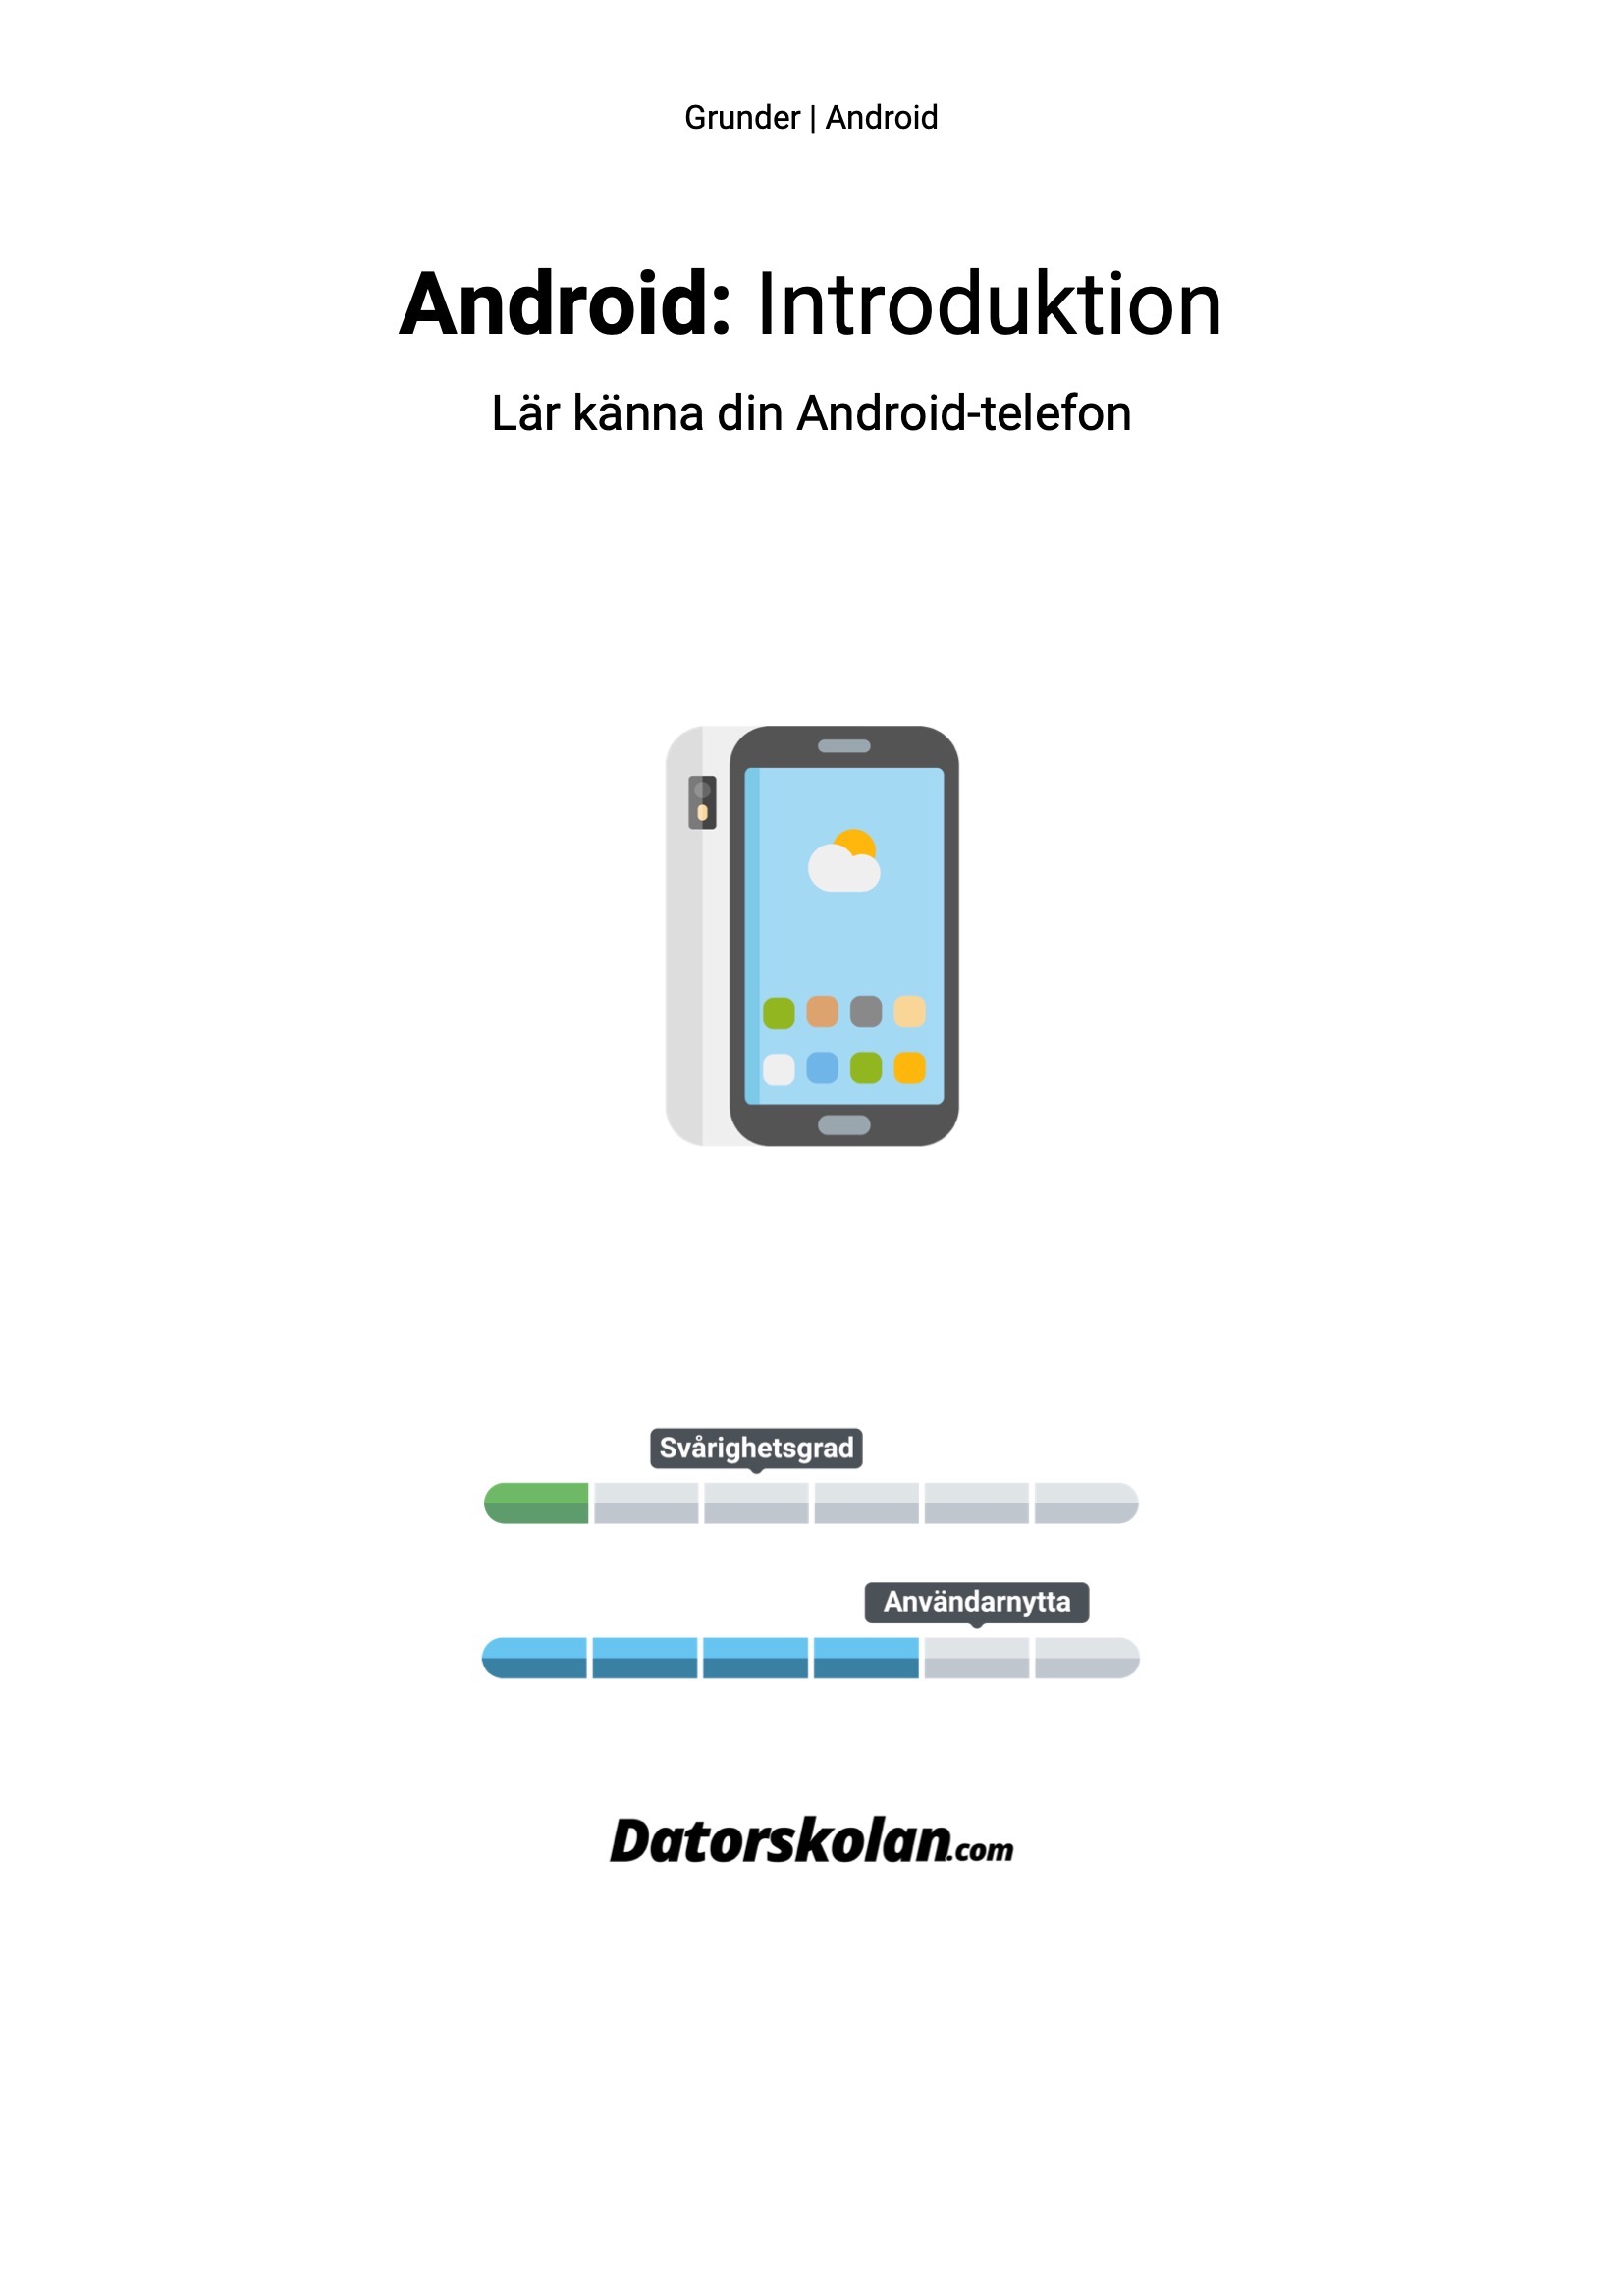 Framsidan av DigiGuiden som heter “Android: Introduktion”